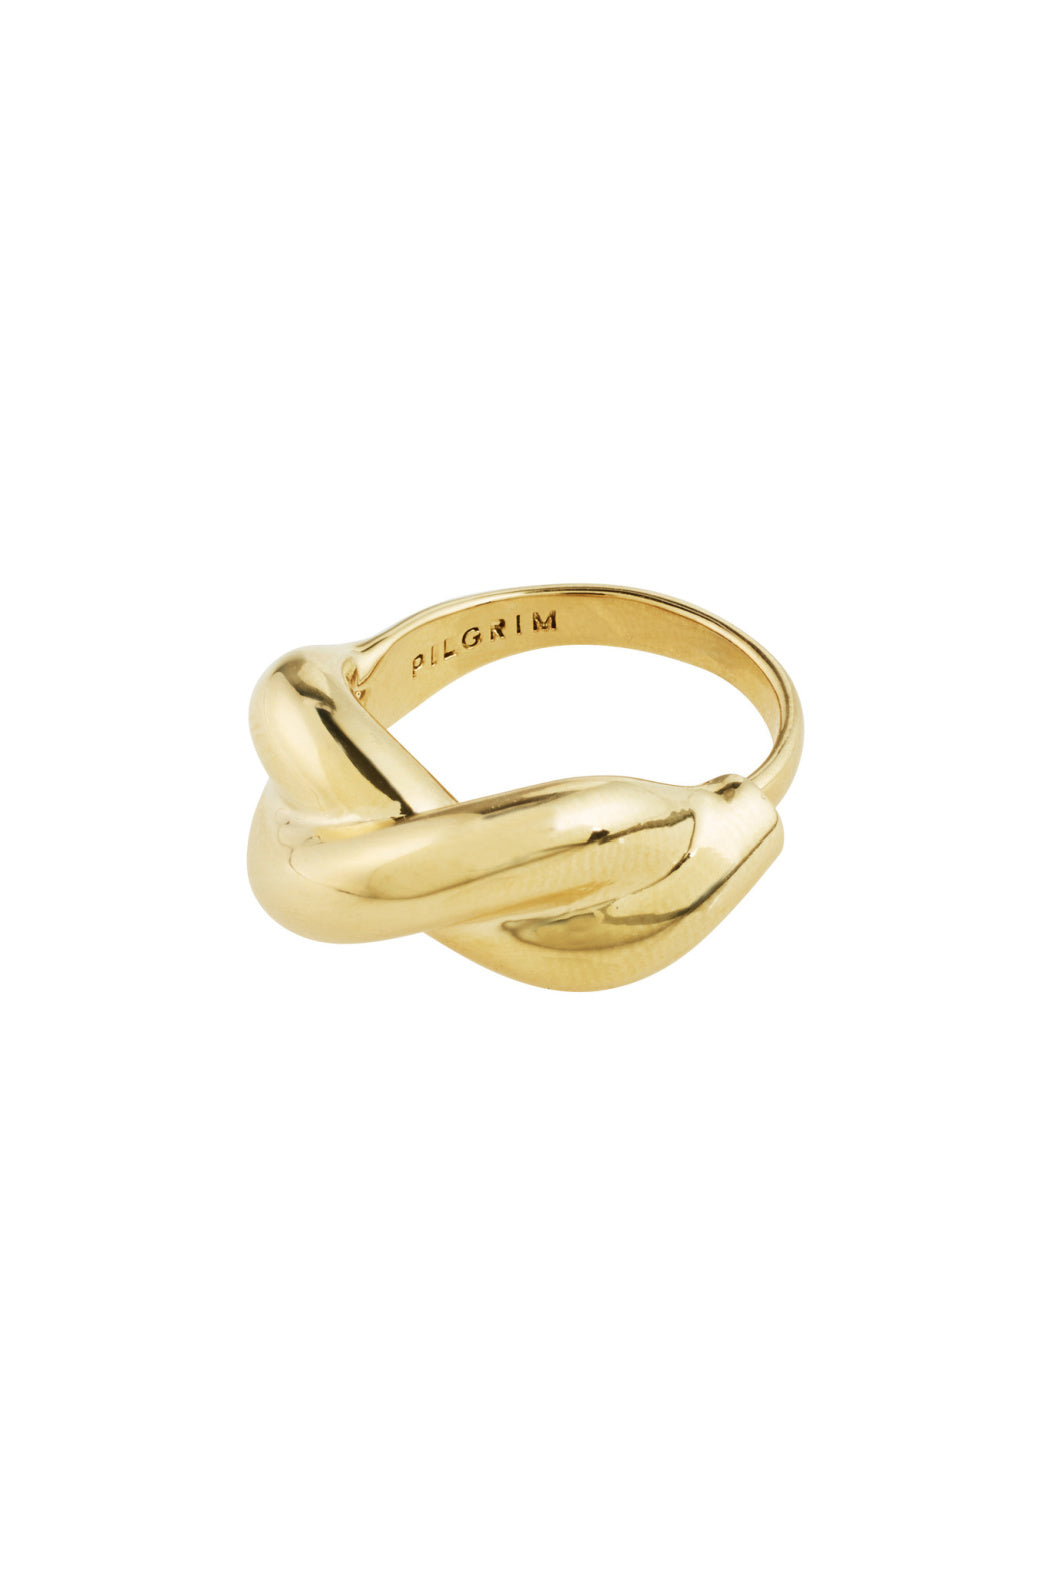 Belief Ring - Gold | Pilgrim